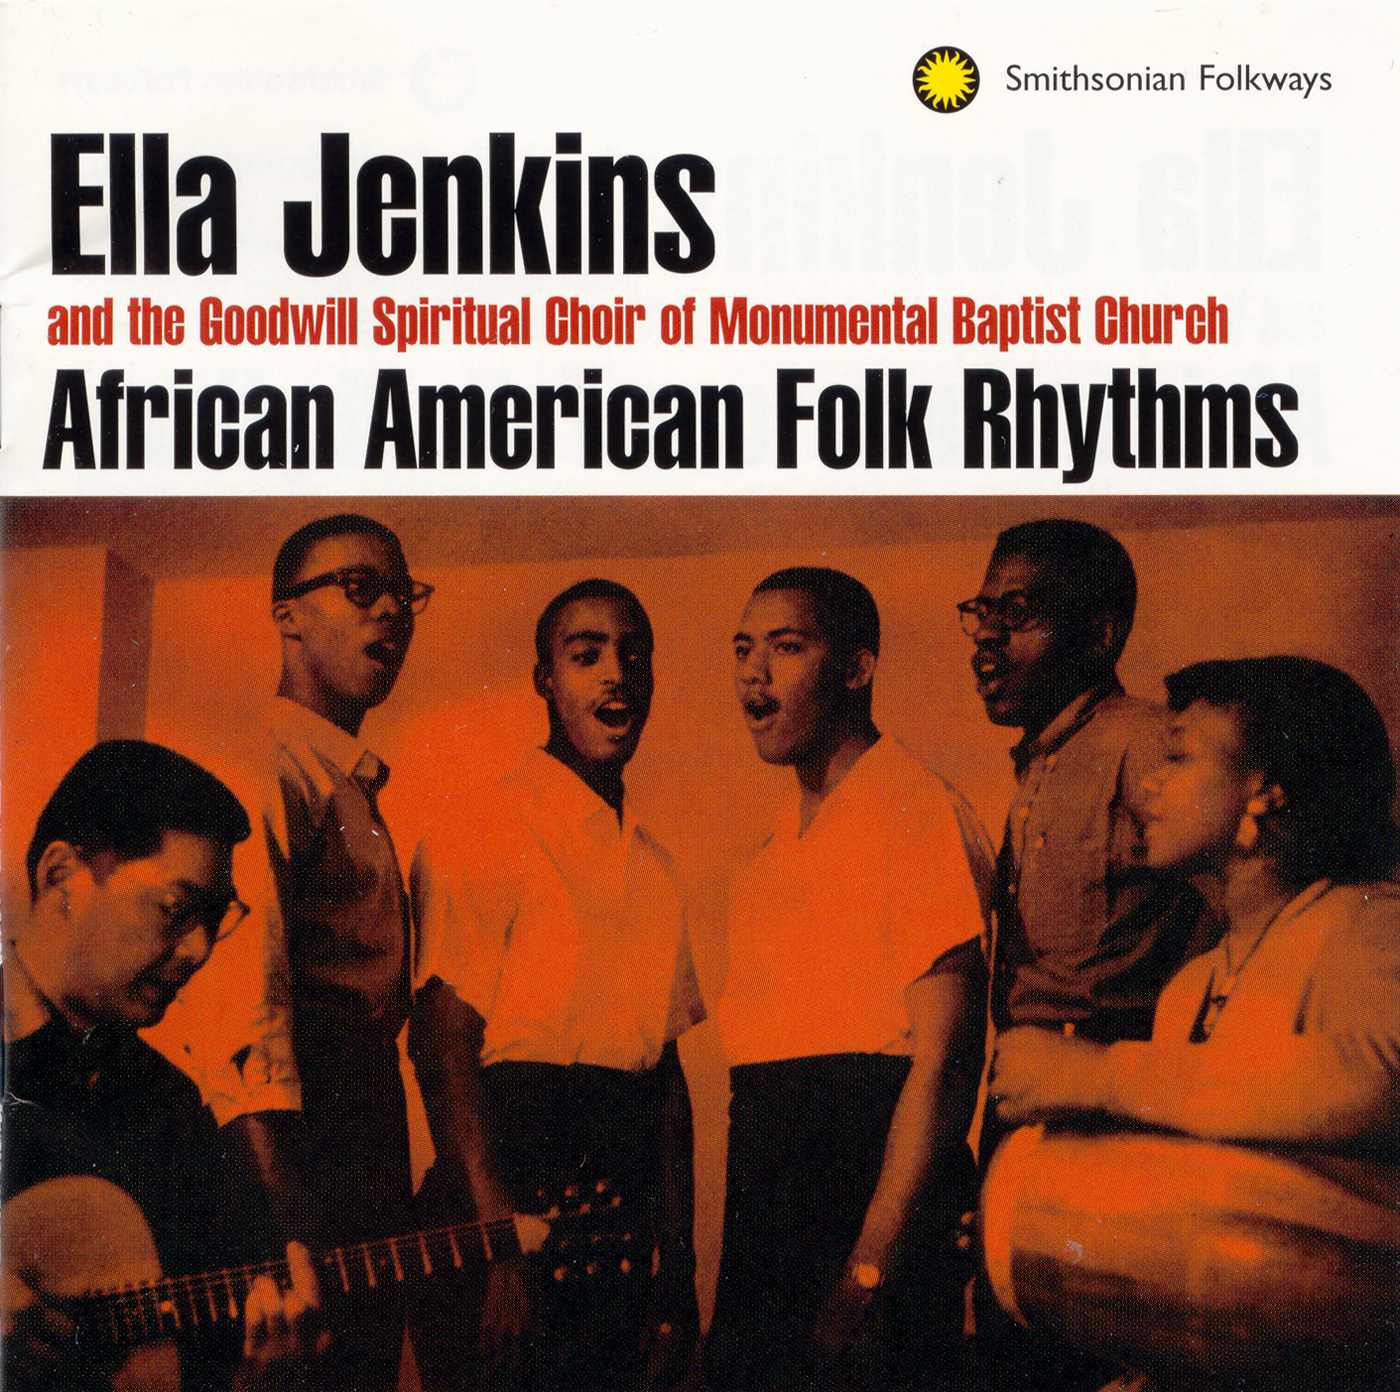 African American Folk Rhythms CD artwork